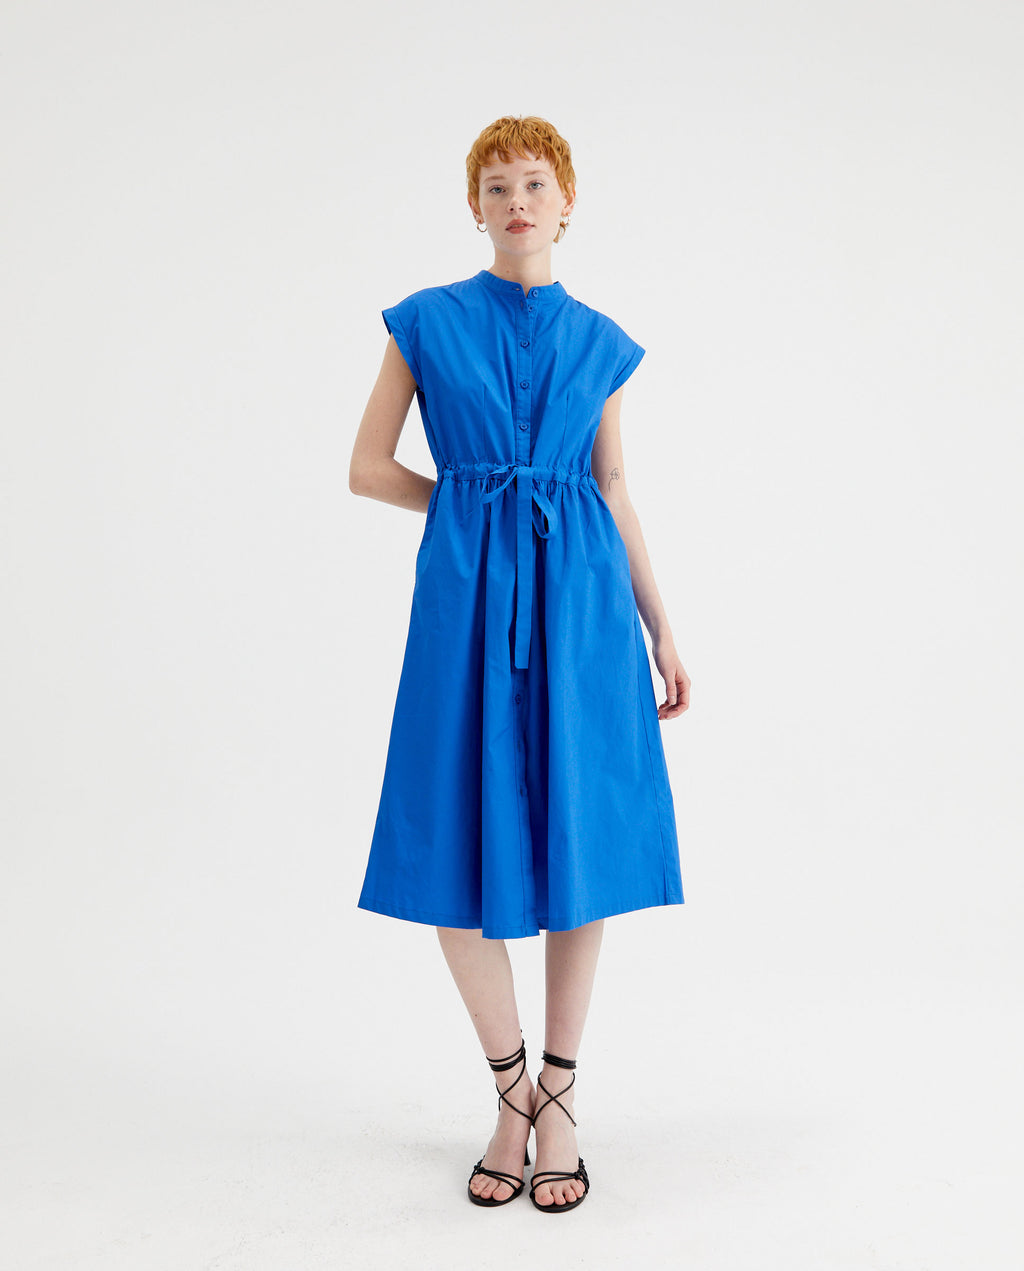 Poplin Sleeveless Dress in Blue